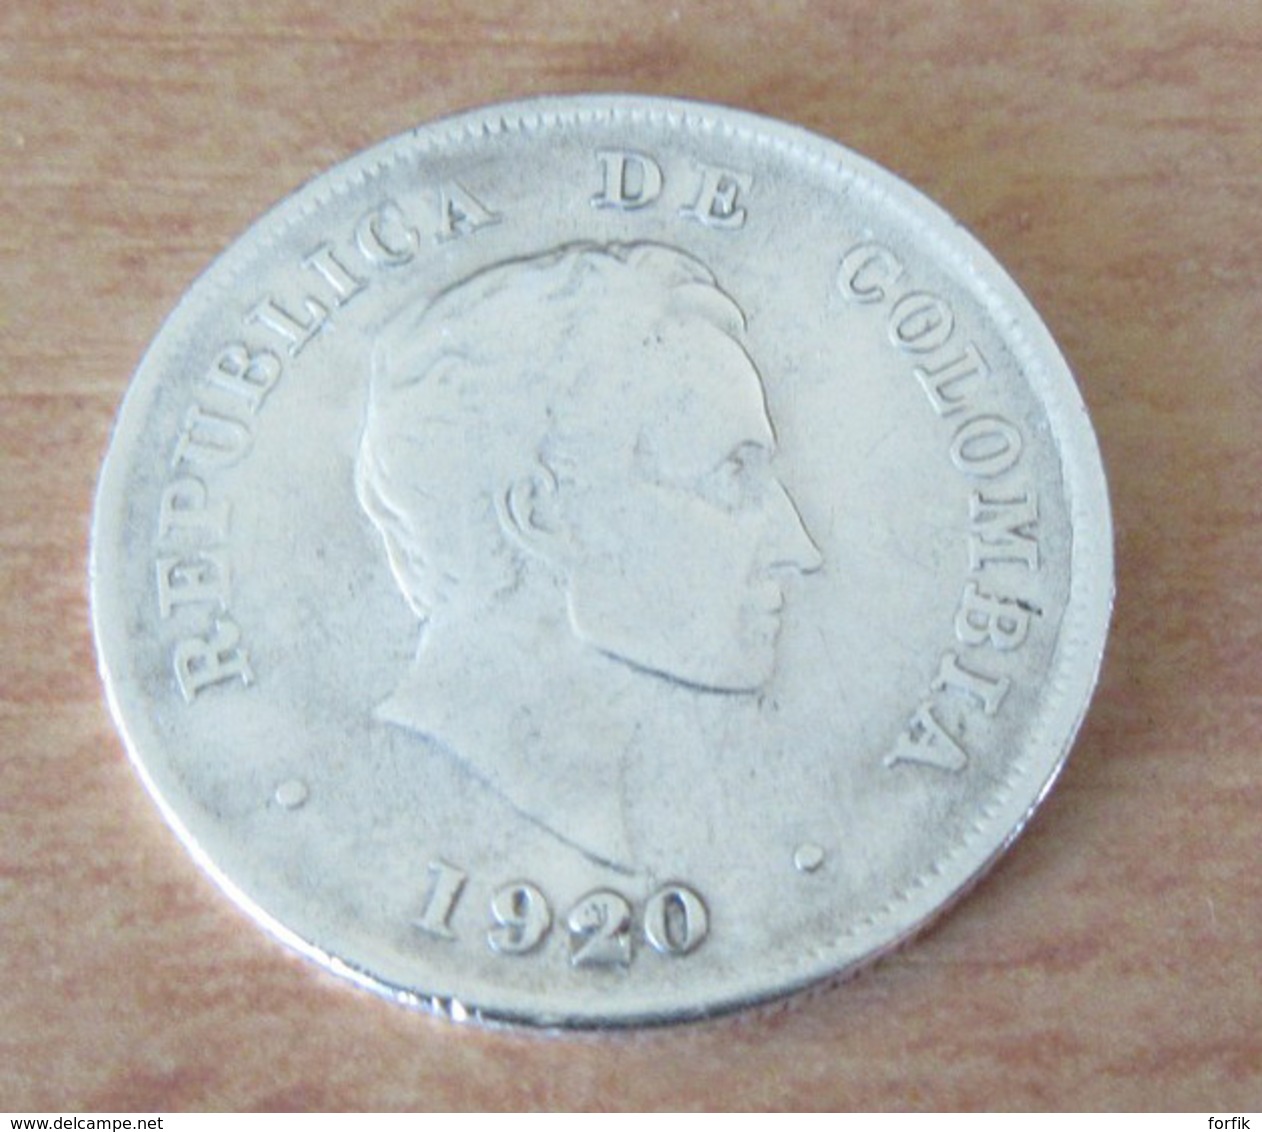 Colombie - Monnaie Veinte (20) Centavos 1920 En Argent - Colombia